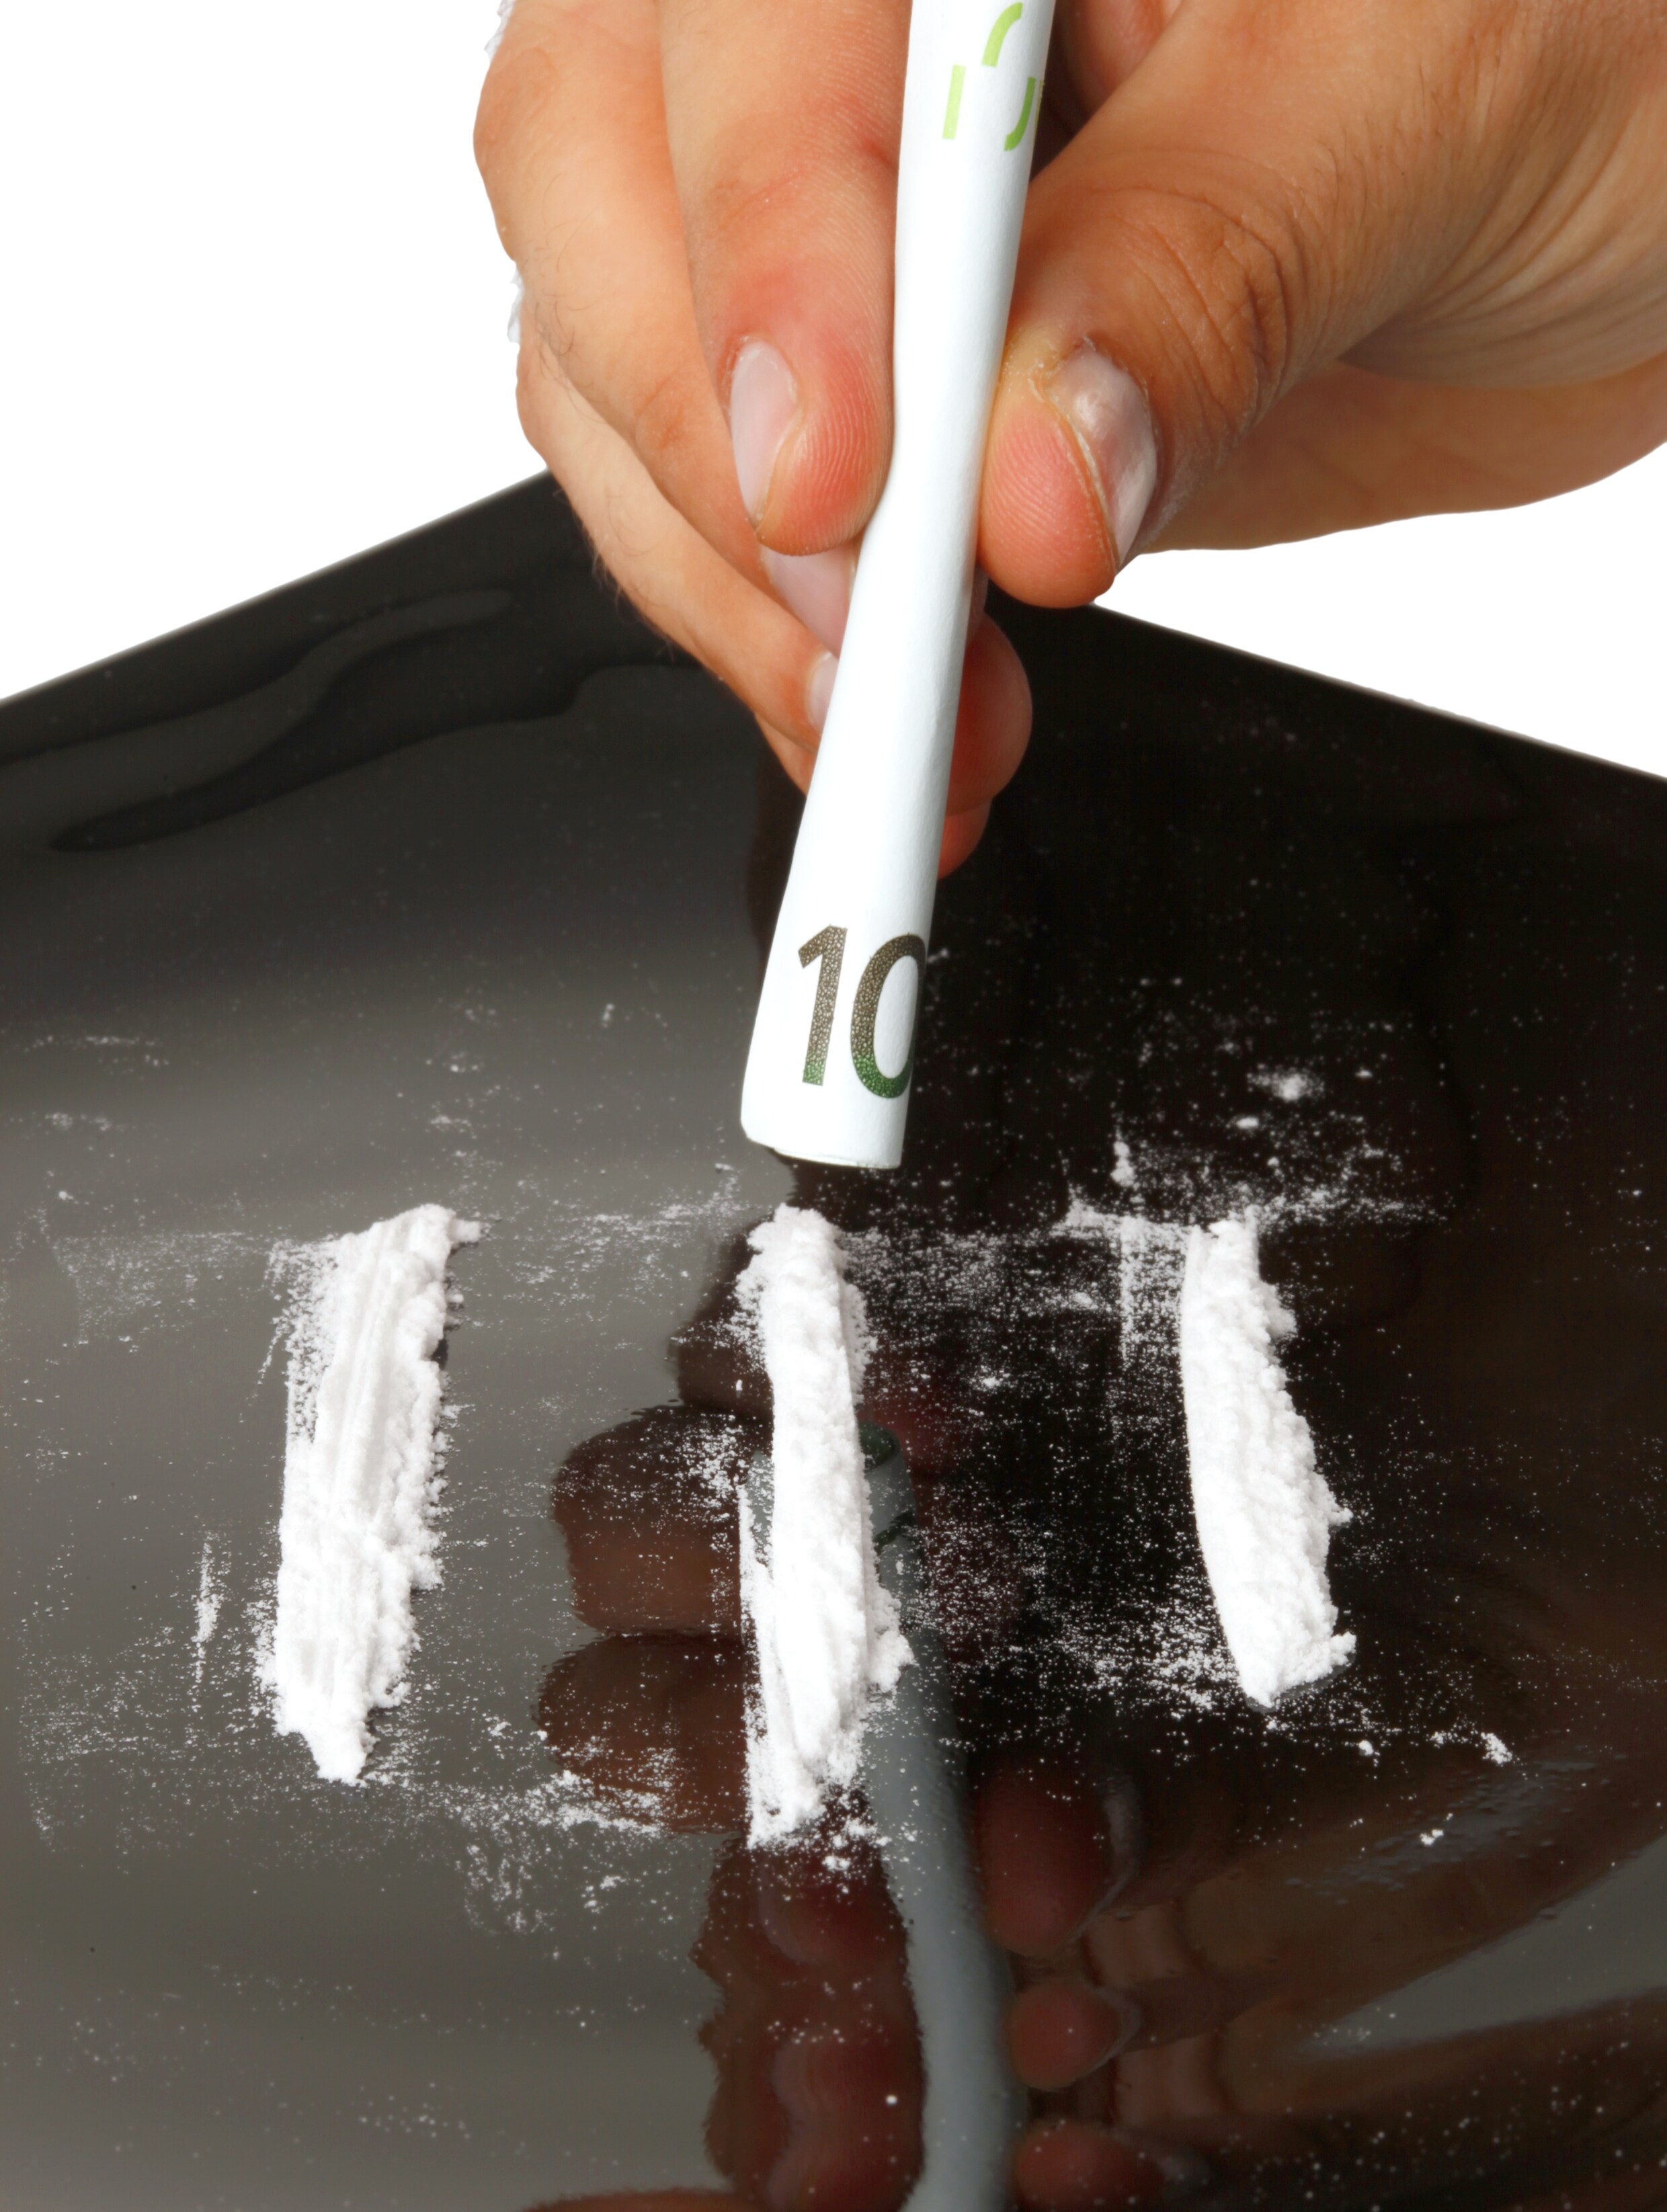 Cocaïnehandel ‘mogelijk de winstgevendste criminele activiteit die er is’